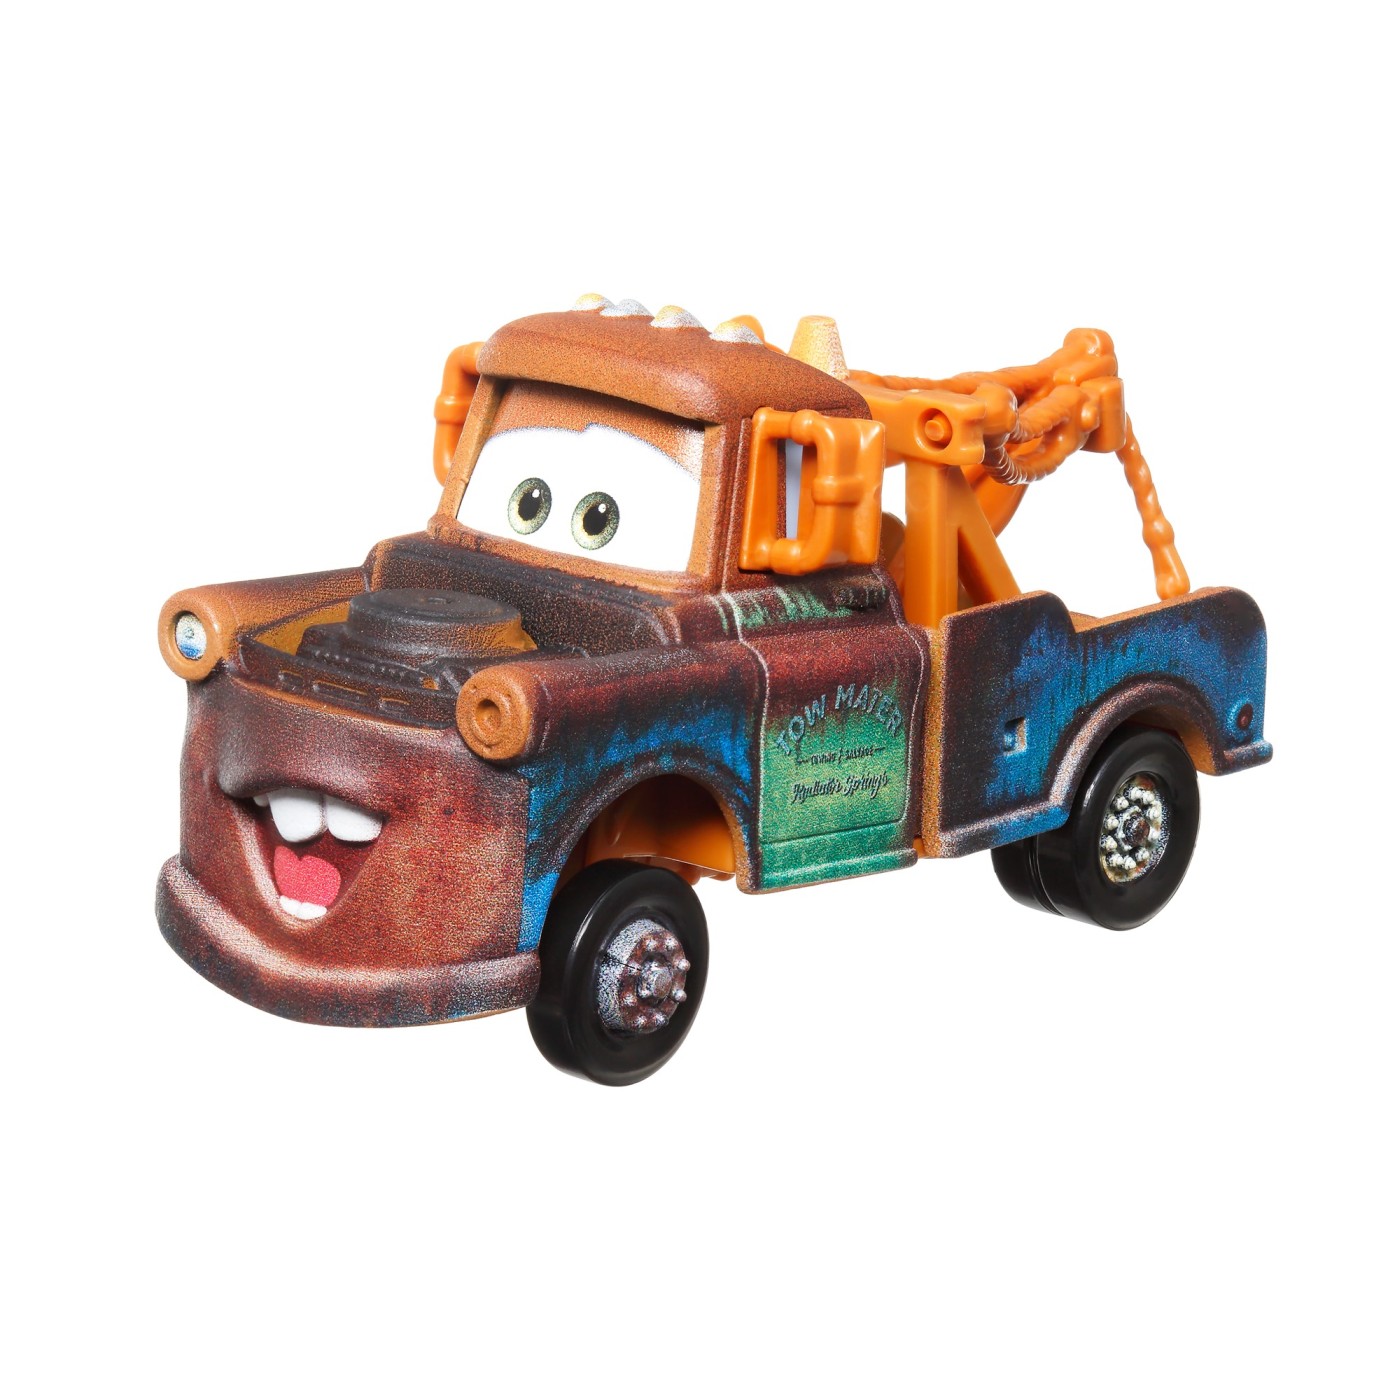  Masina metalica Cars 3 - Road Trip Mater | Mattel 